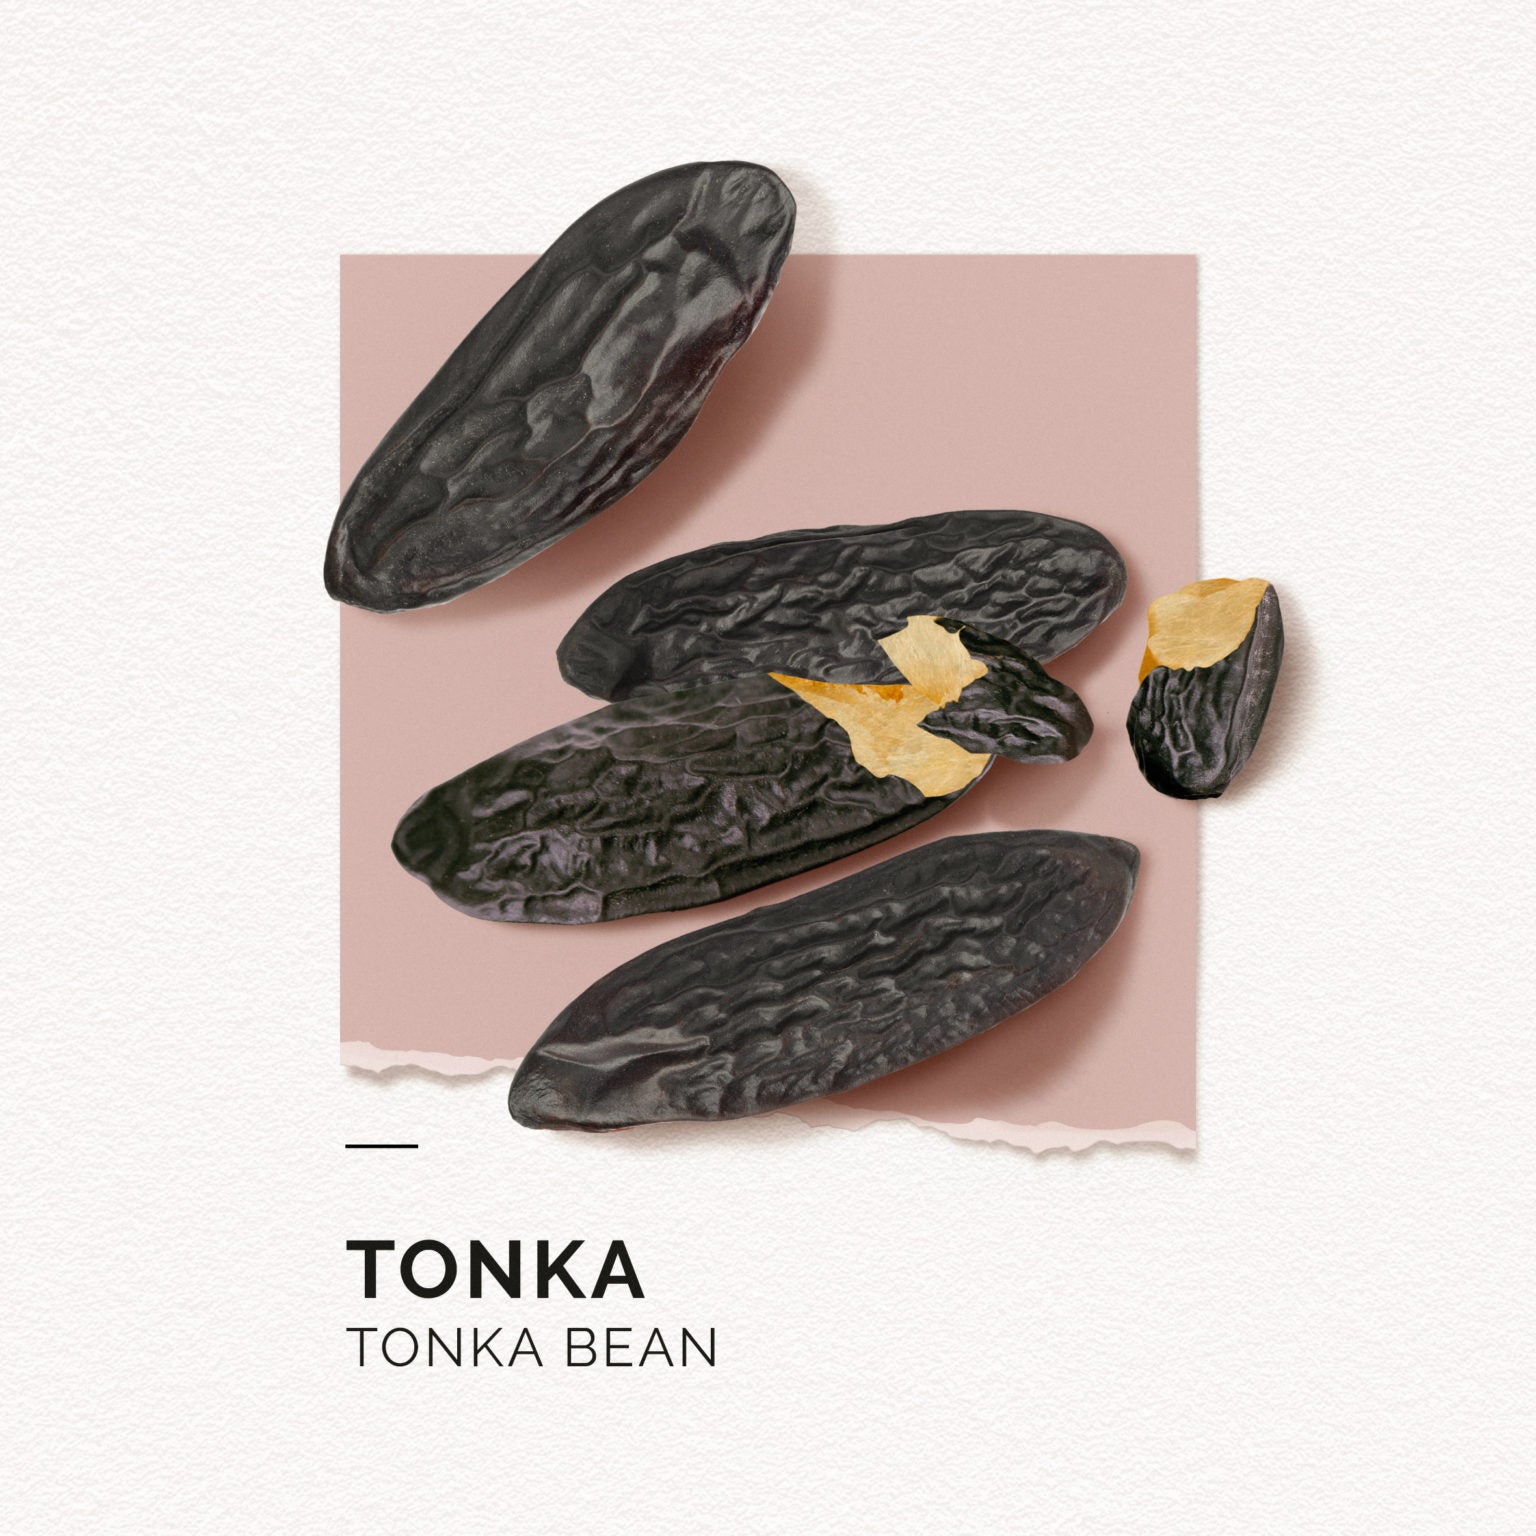 Tonka | Perfume 15ml